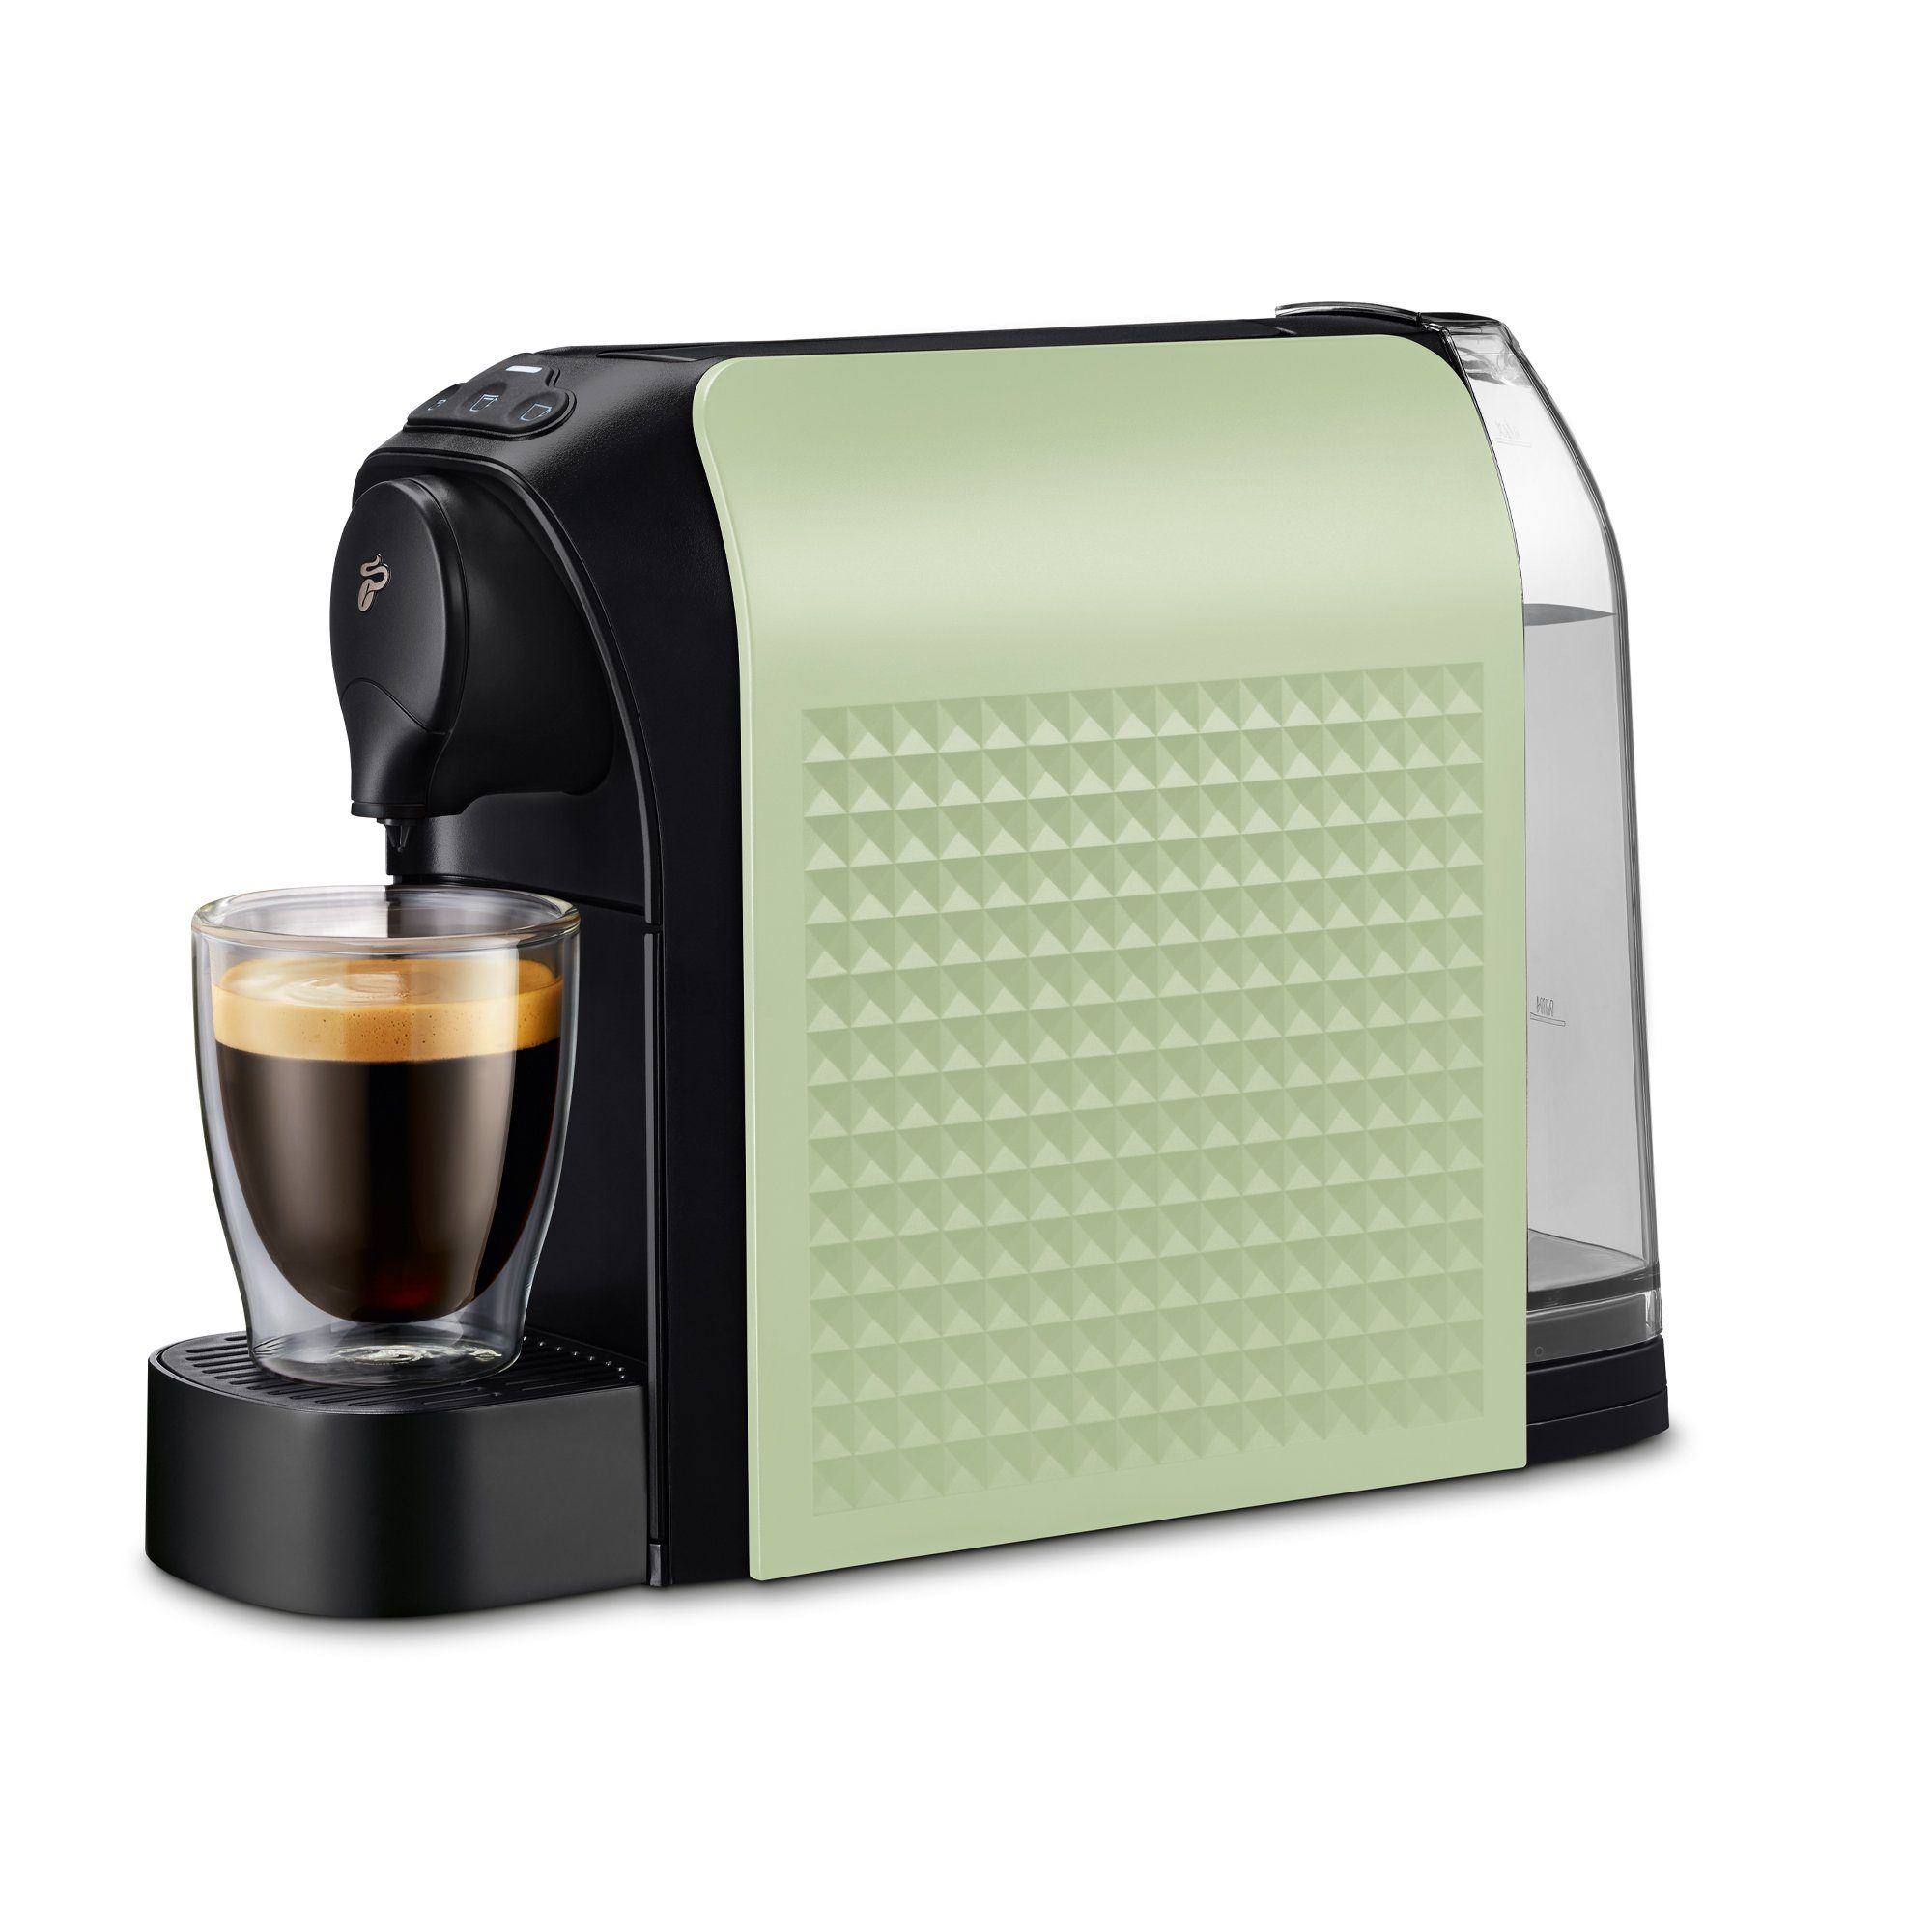 Grüne Kaffeemaschine online kaufen | OTTO